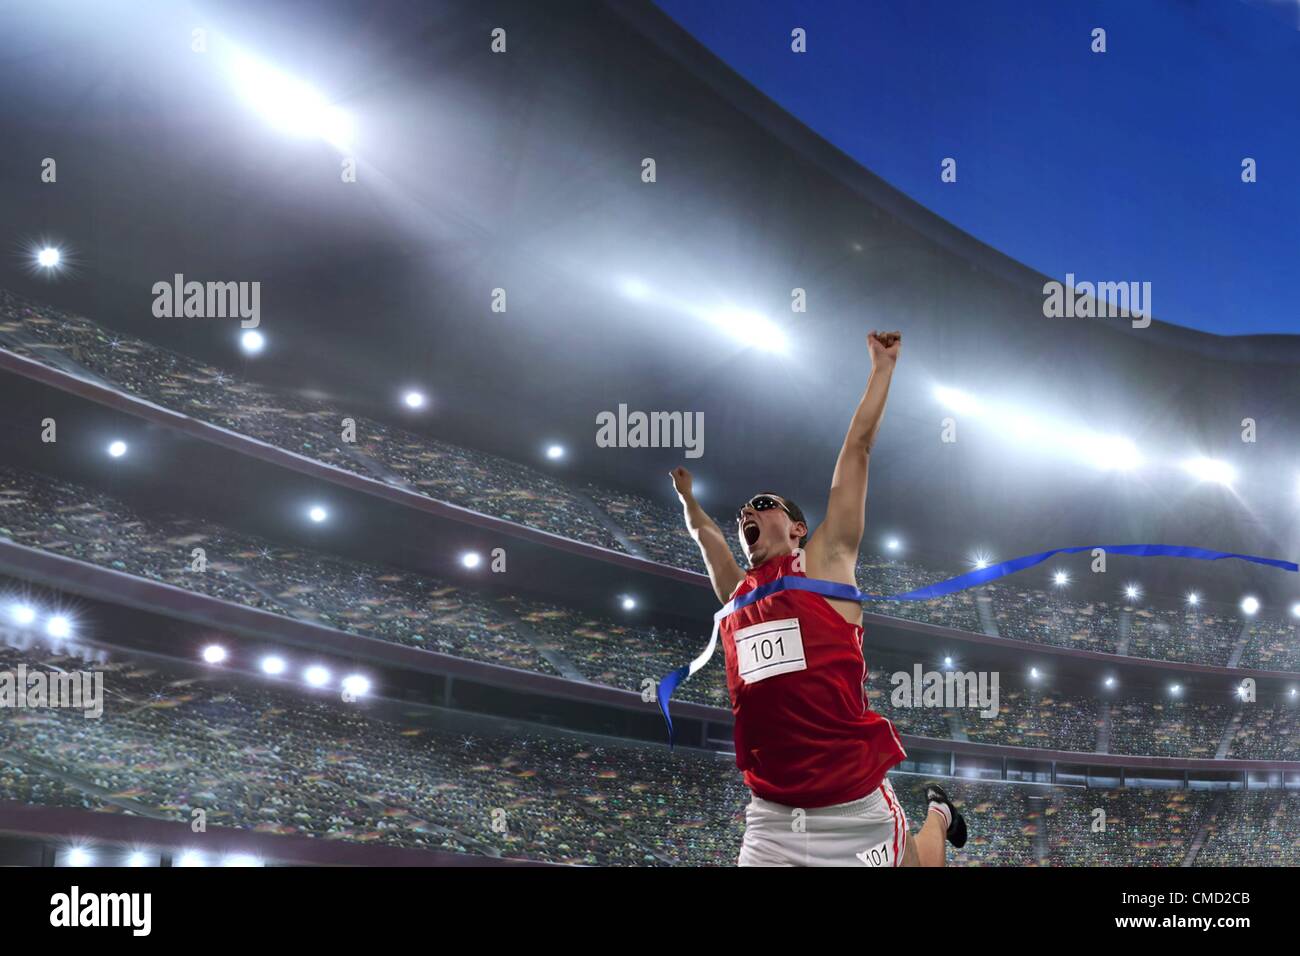 08.11.2011. Parution d'un modèle photo athlète masculin de célébrer sa victoire dans un stade de l'athlétisme devant une grande foule de fans Banque D'Images